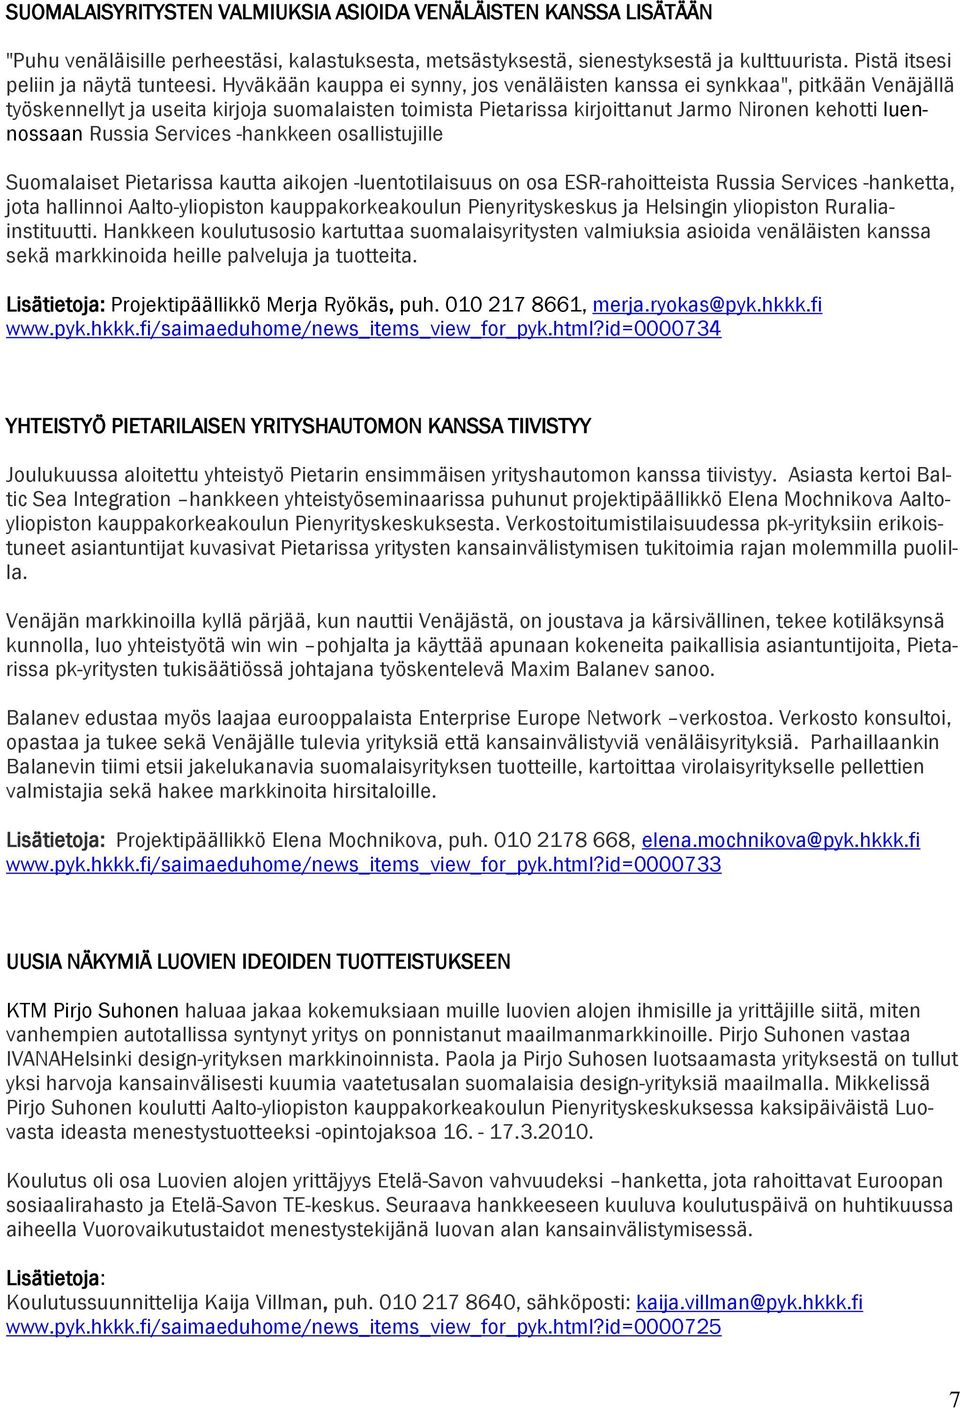 Services -hankkeen osallistujille Suomalaiset Pietarissa kautta aikojen -luentotilaisuus on osa ESR-rahoitteista Russia Services -hanketta, jota hallinnoi Aalto-yliopiston kauppakorkeakoulun